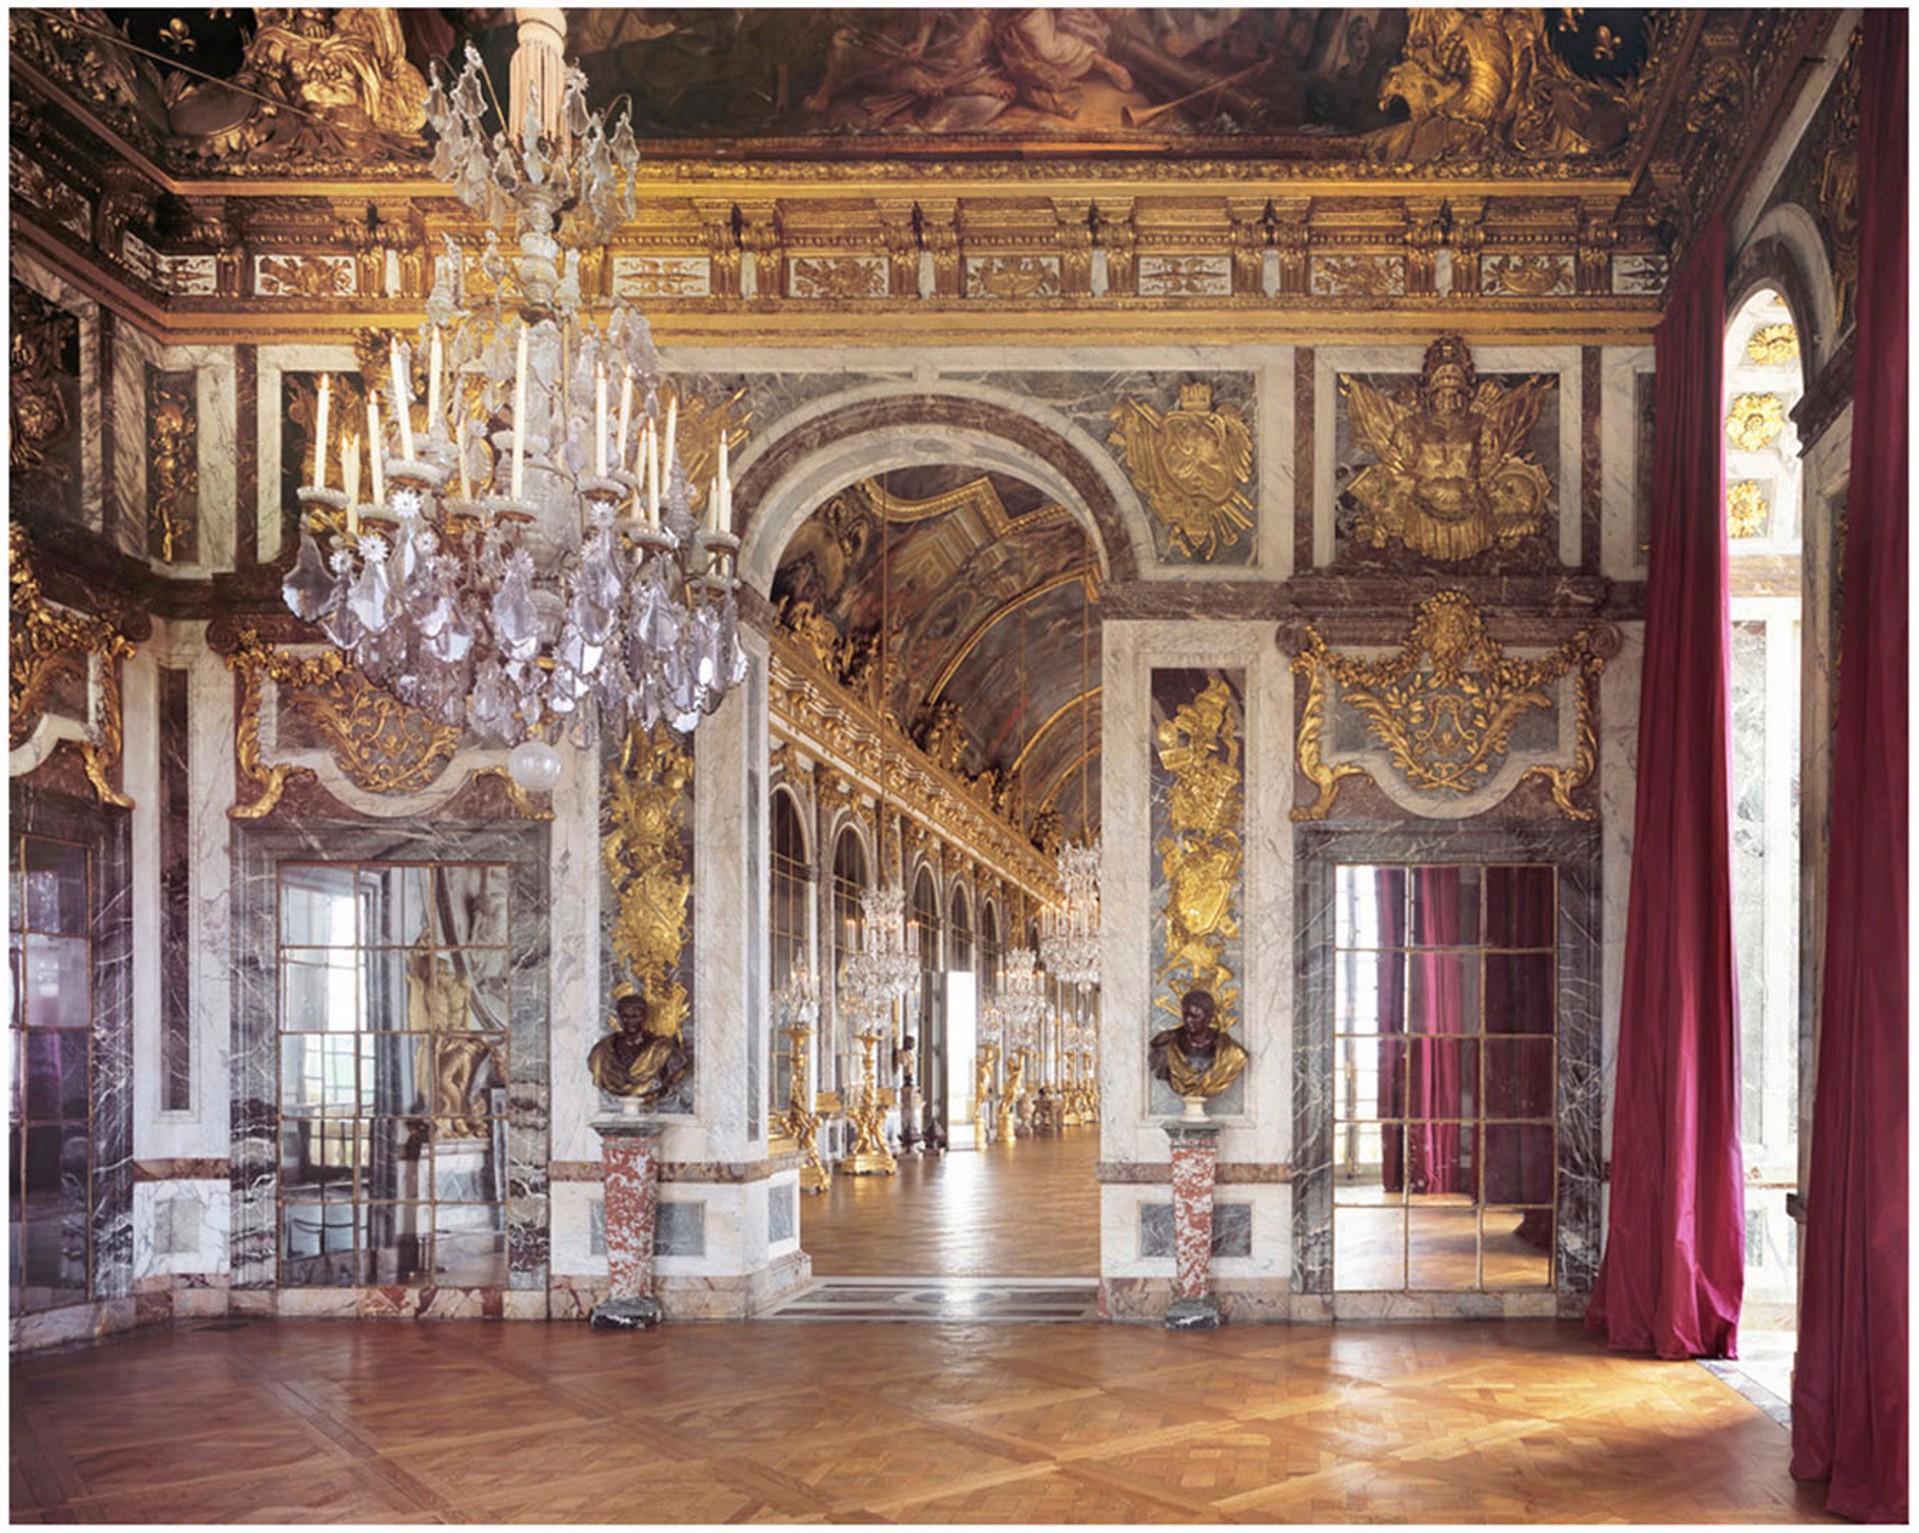 Salon de la Guerre, Chateau de Versailles. France. by Reinhard Gorner